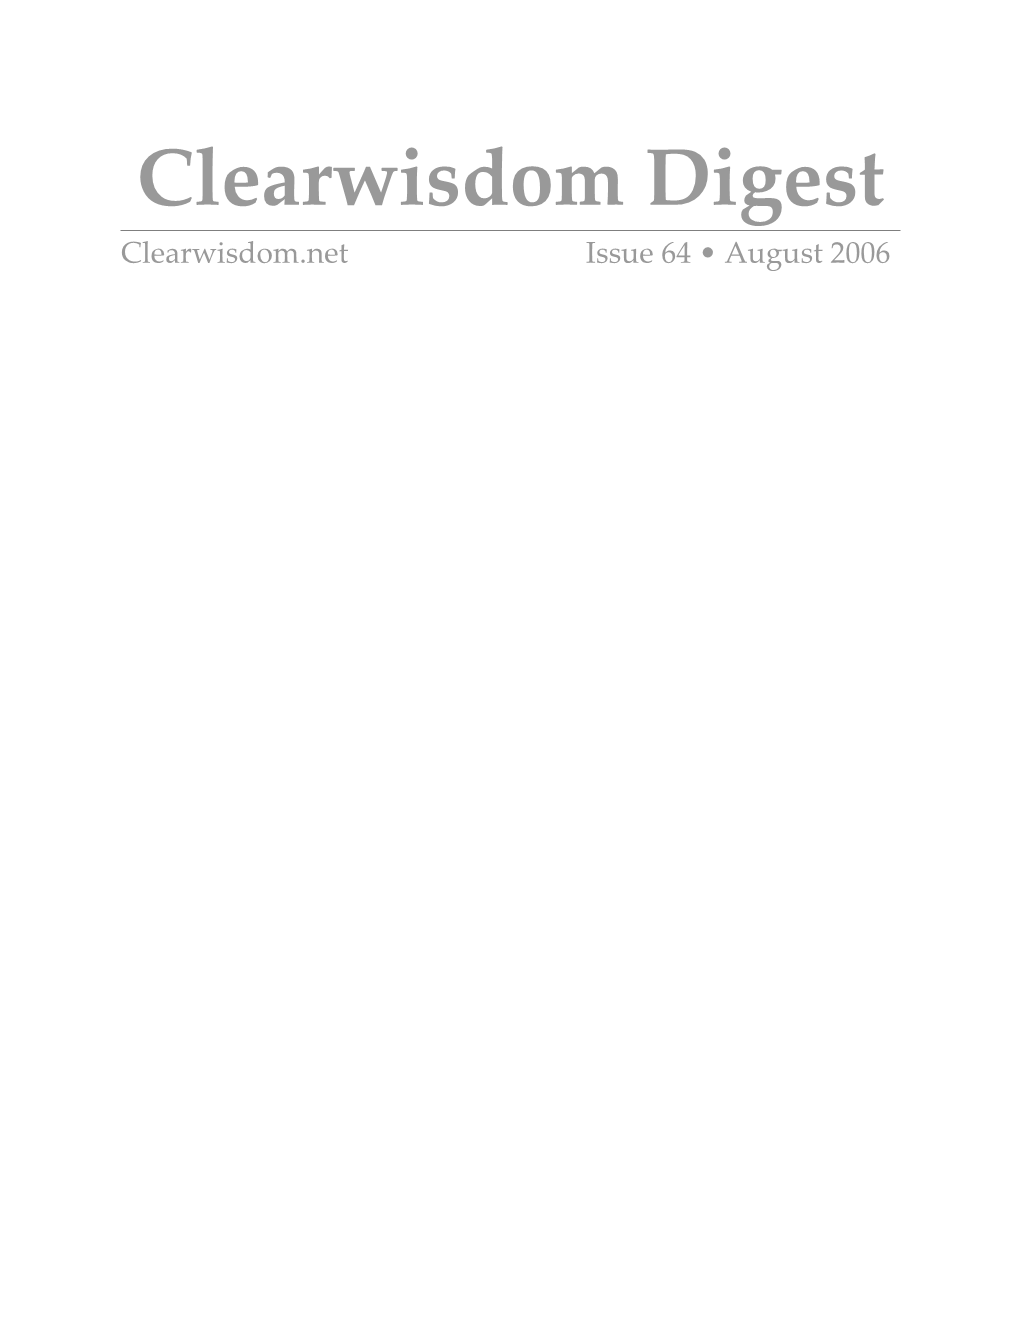 Clearwisdom Digest